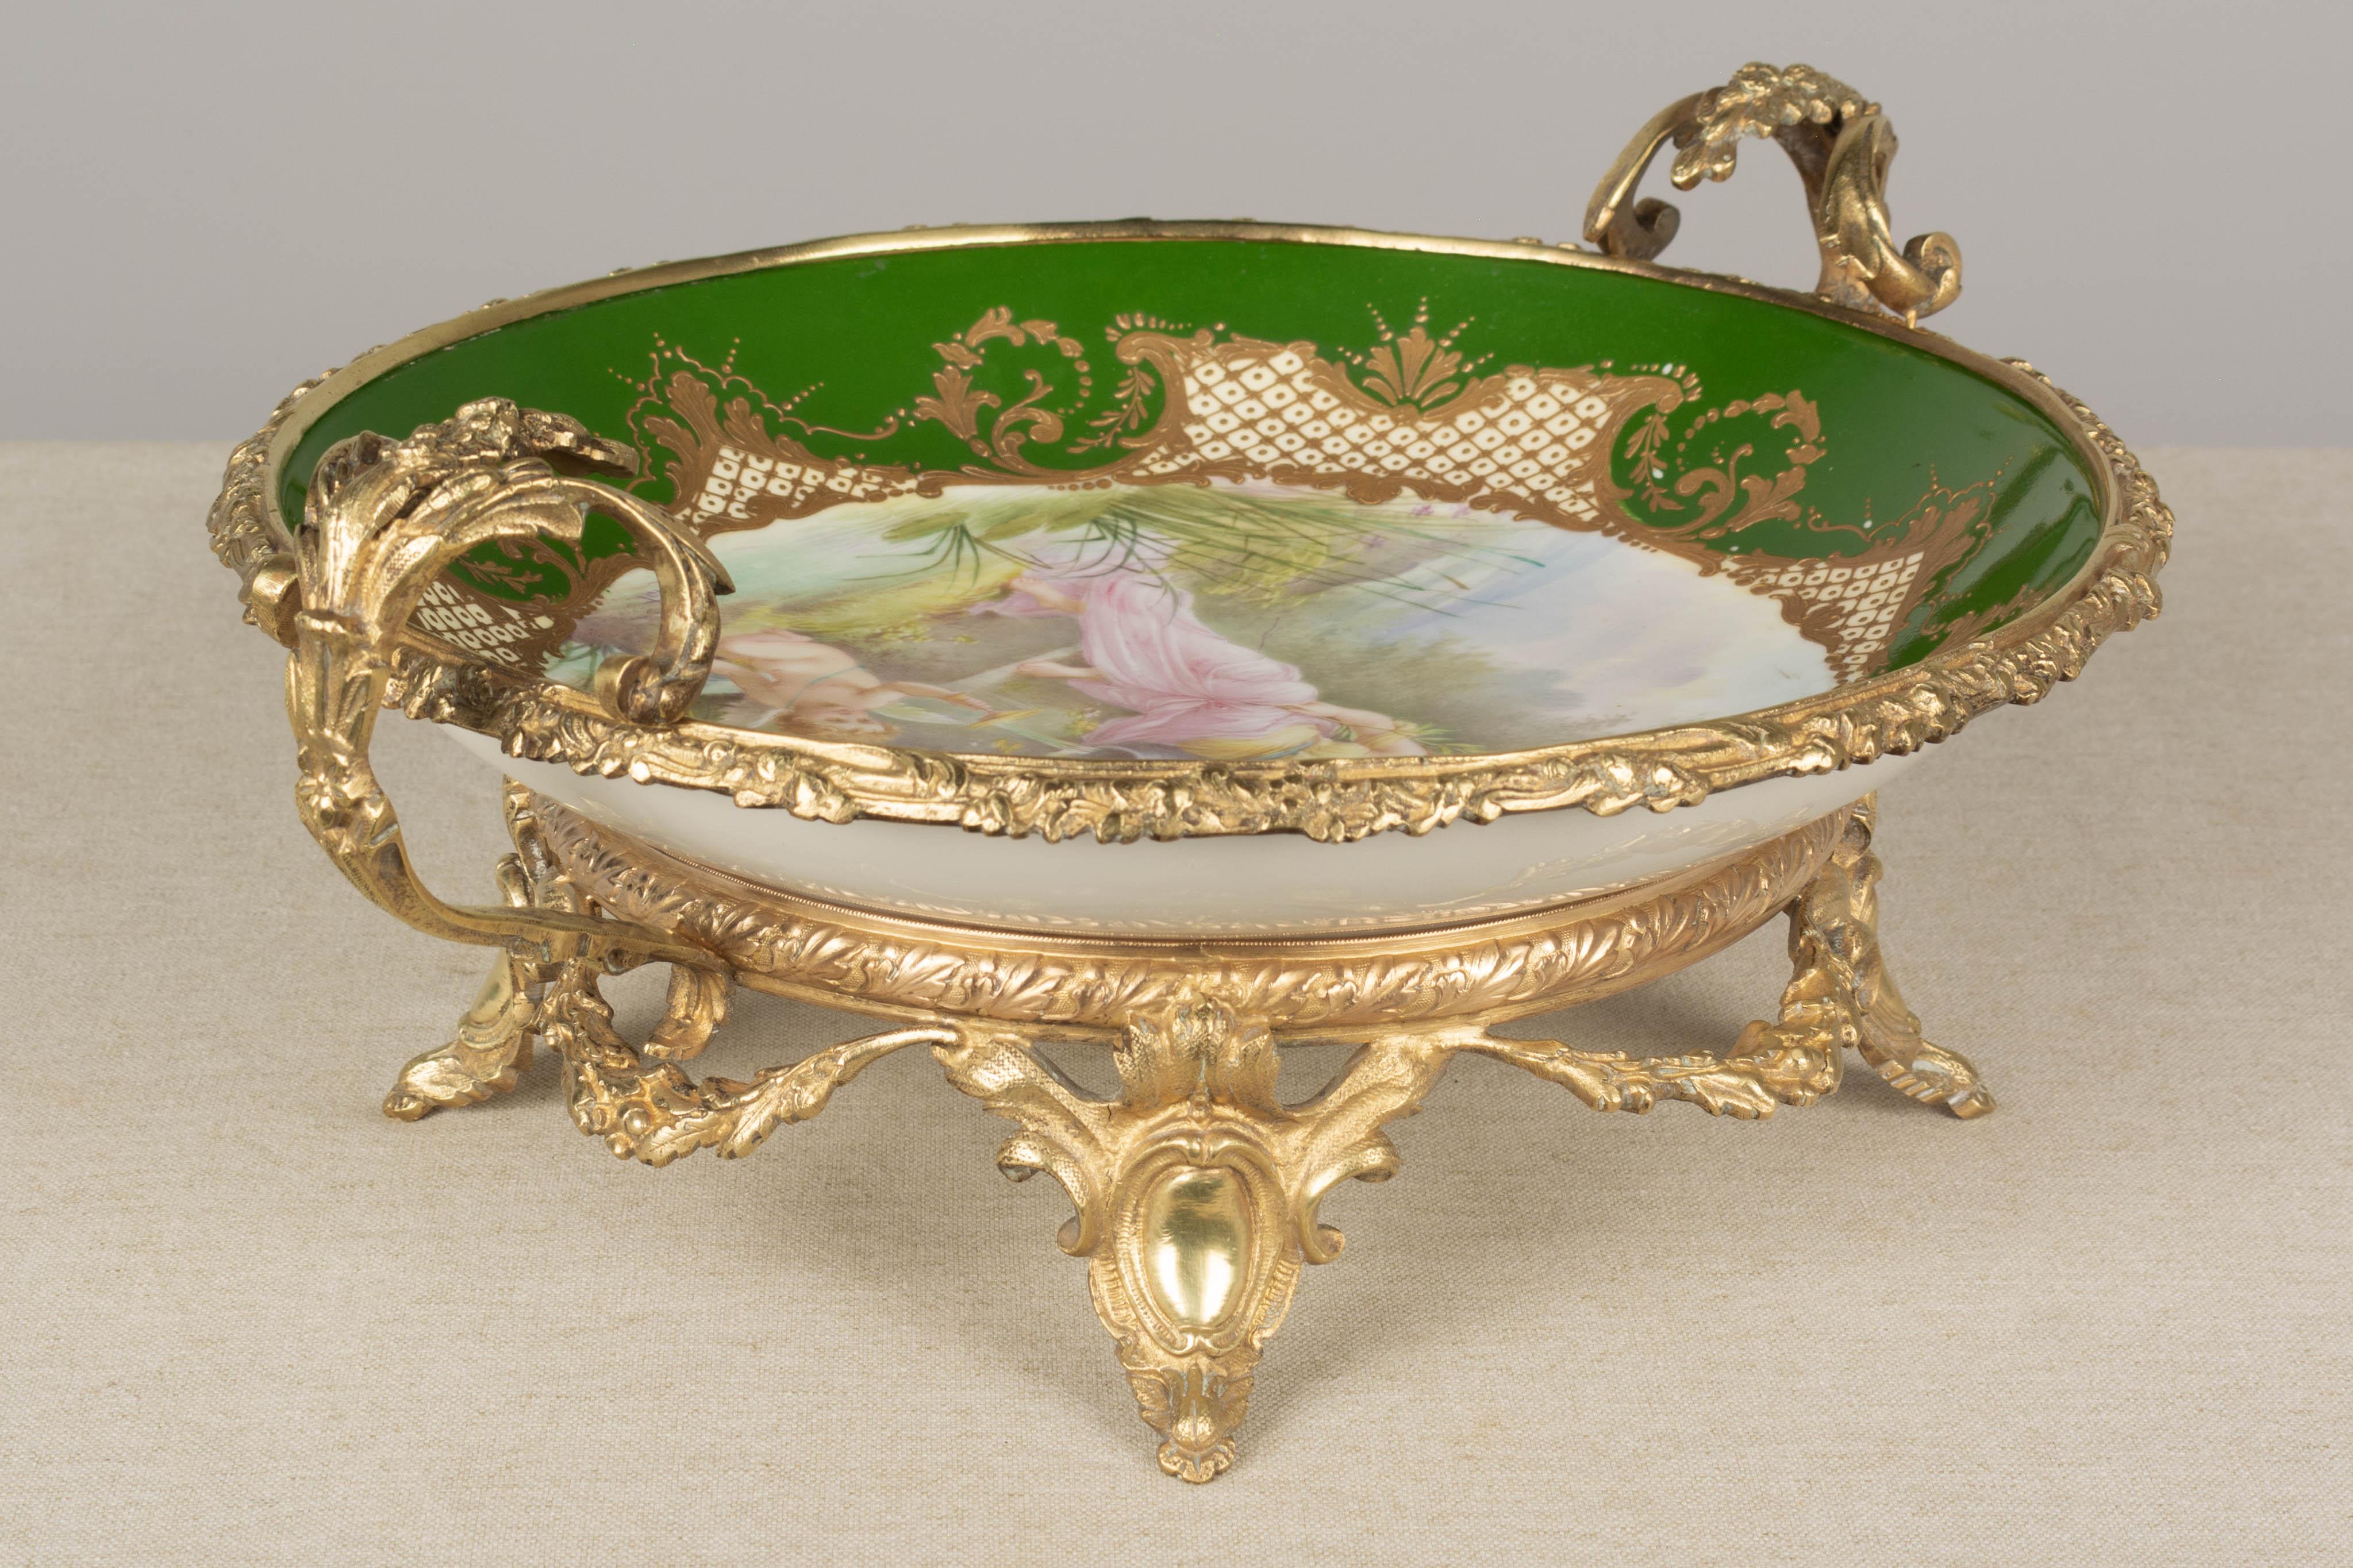 19th Century French Ormolu Sèvres Porcelain Centerpiece Bowl For Sale 2